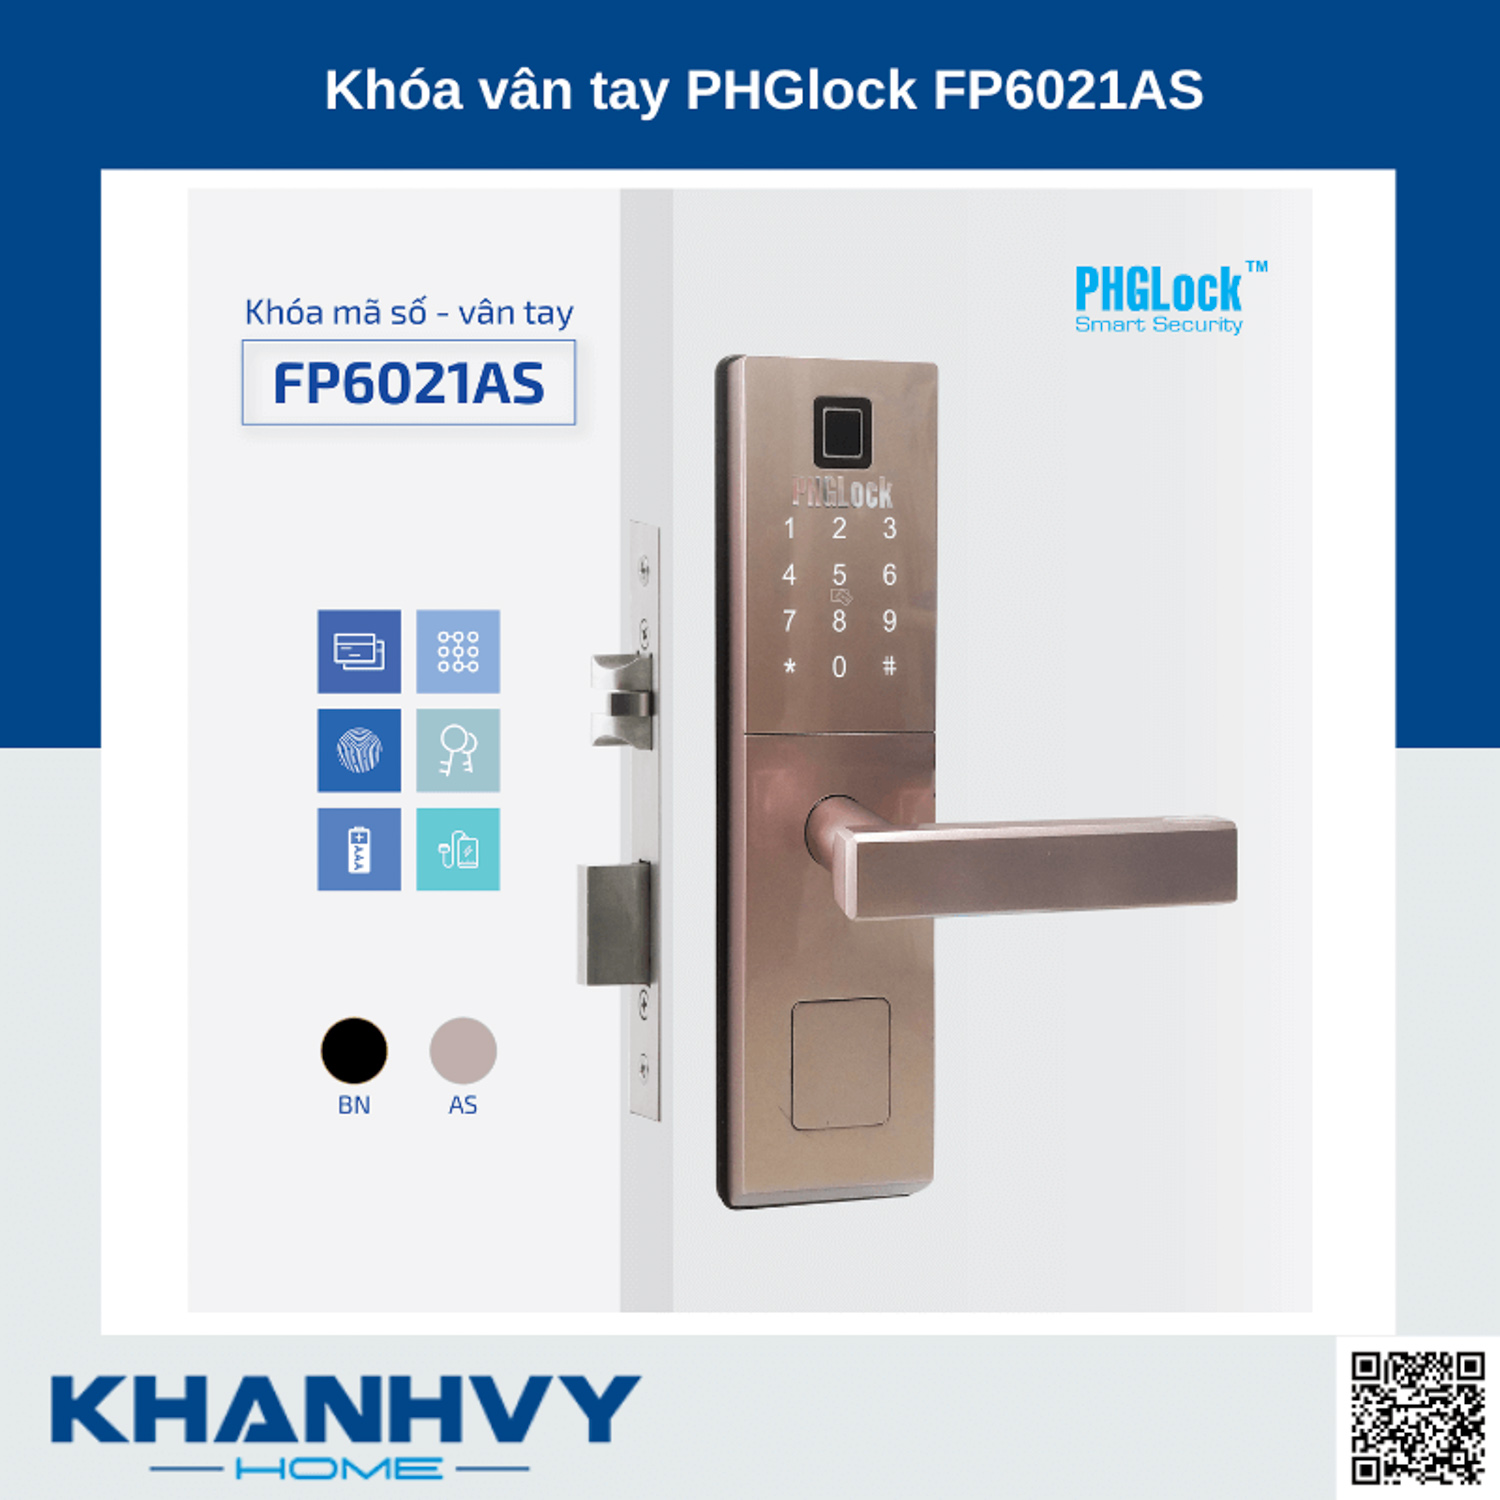 Sản phẩm khóa vân tay PHGlock FP6021AS sở hữu thiết kế hiện đại và sang trọng